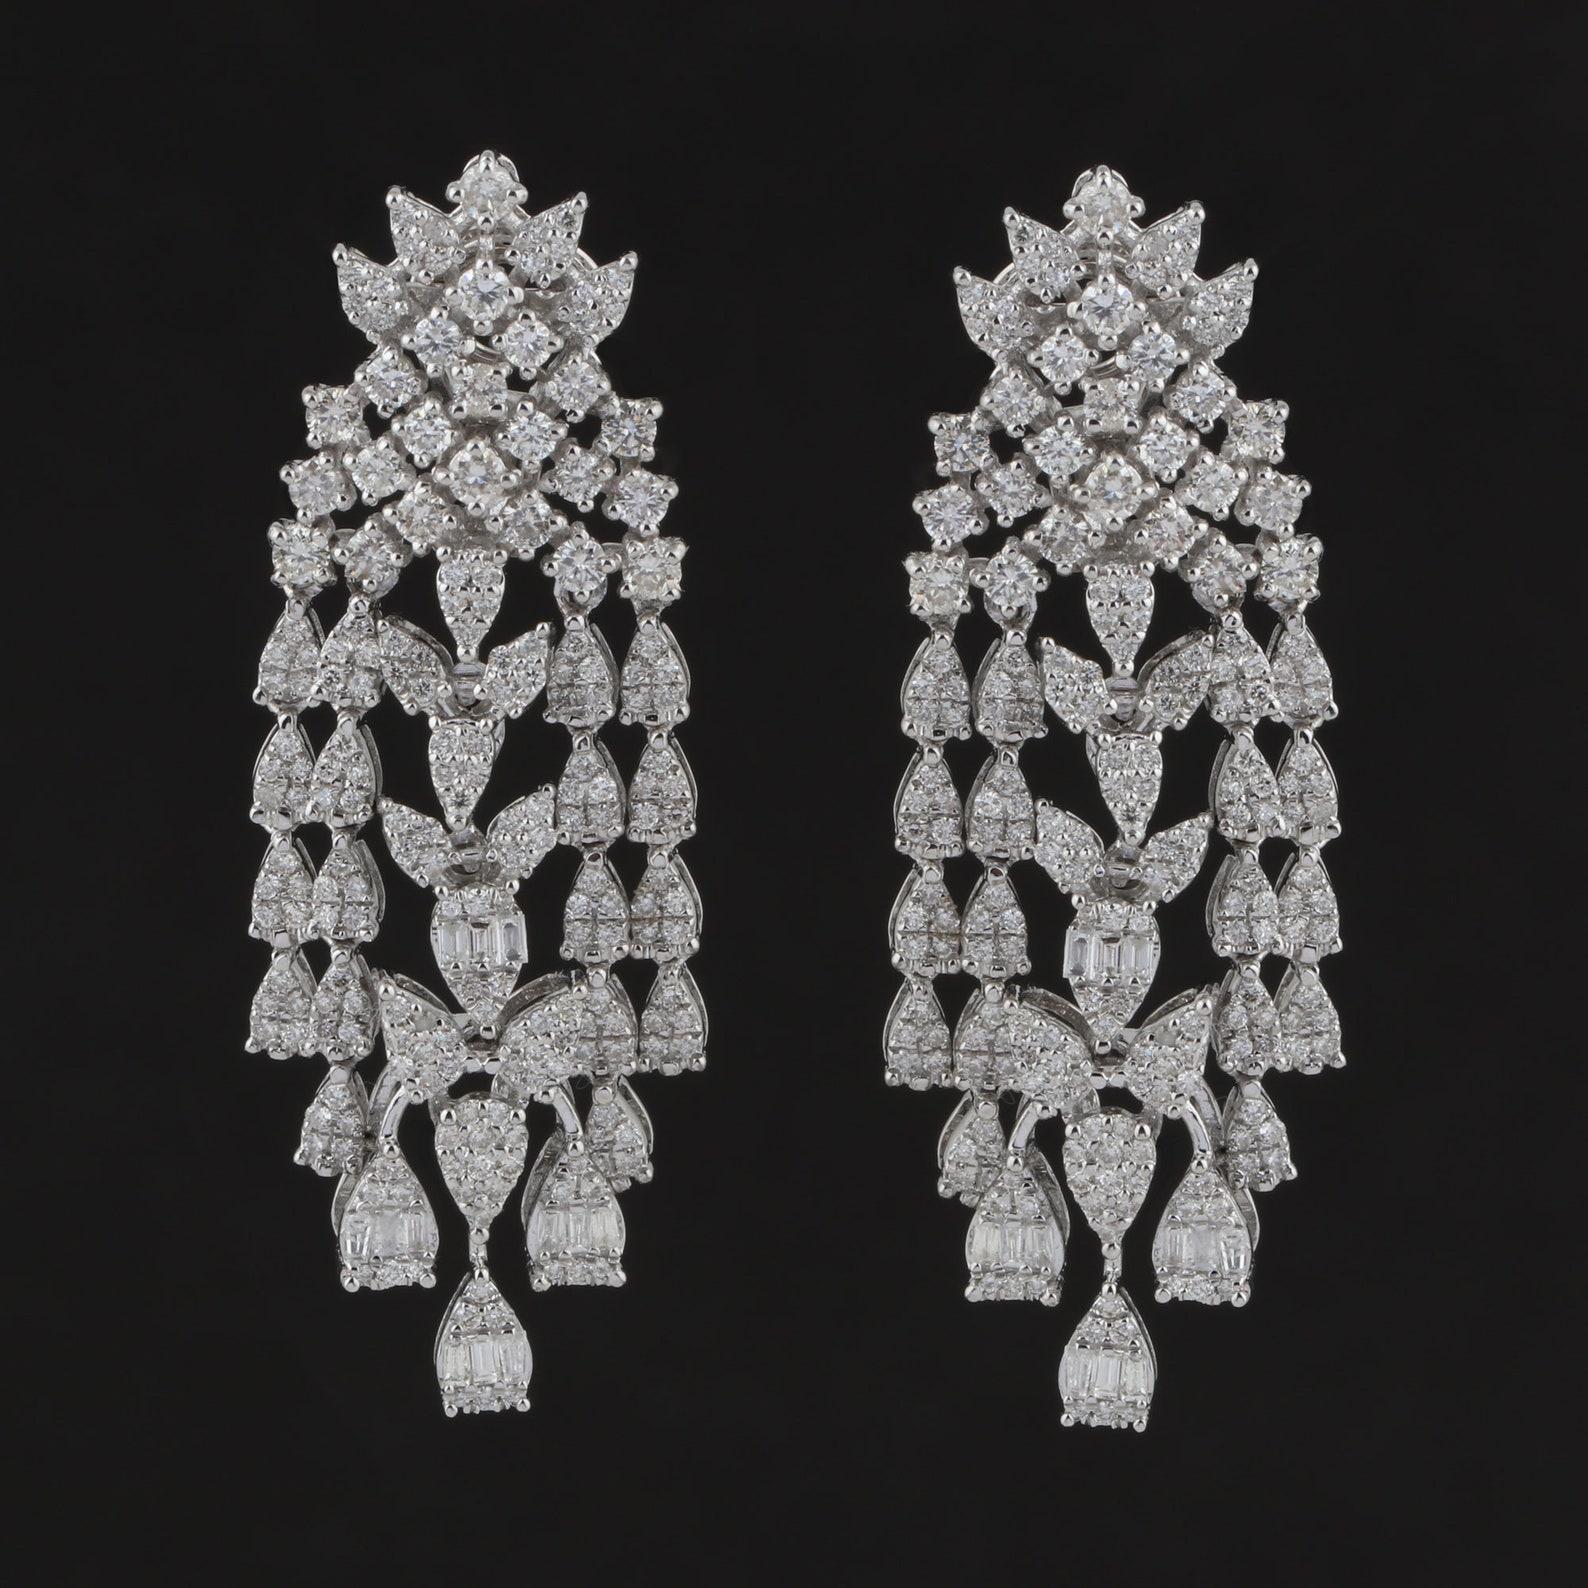 Mixed Cut 3.60 Carat Diamond 14 Karat White Gold Chandelier Earrings For Sale